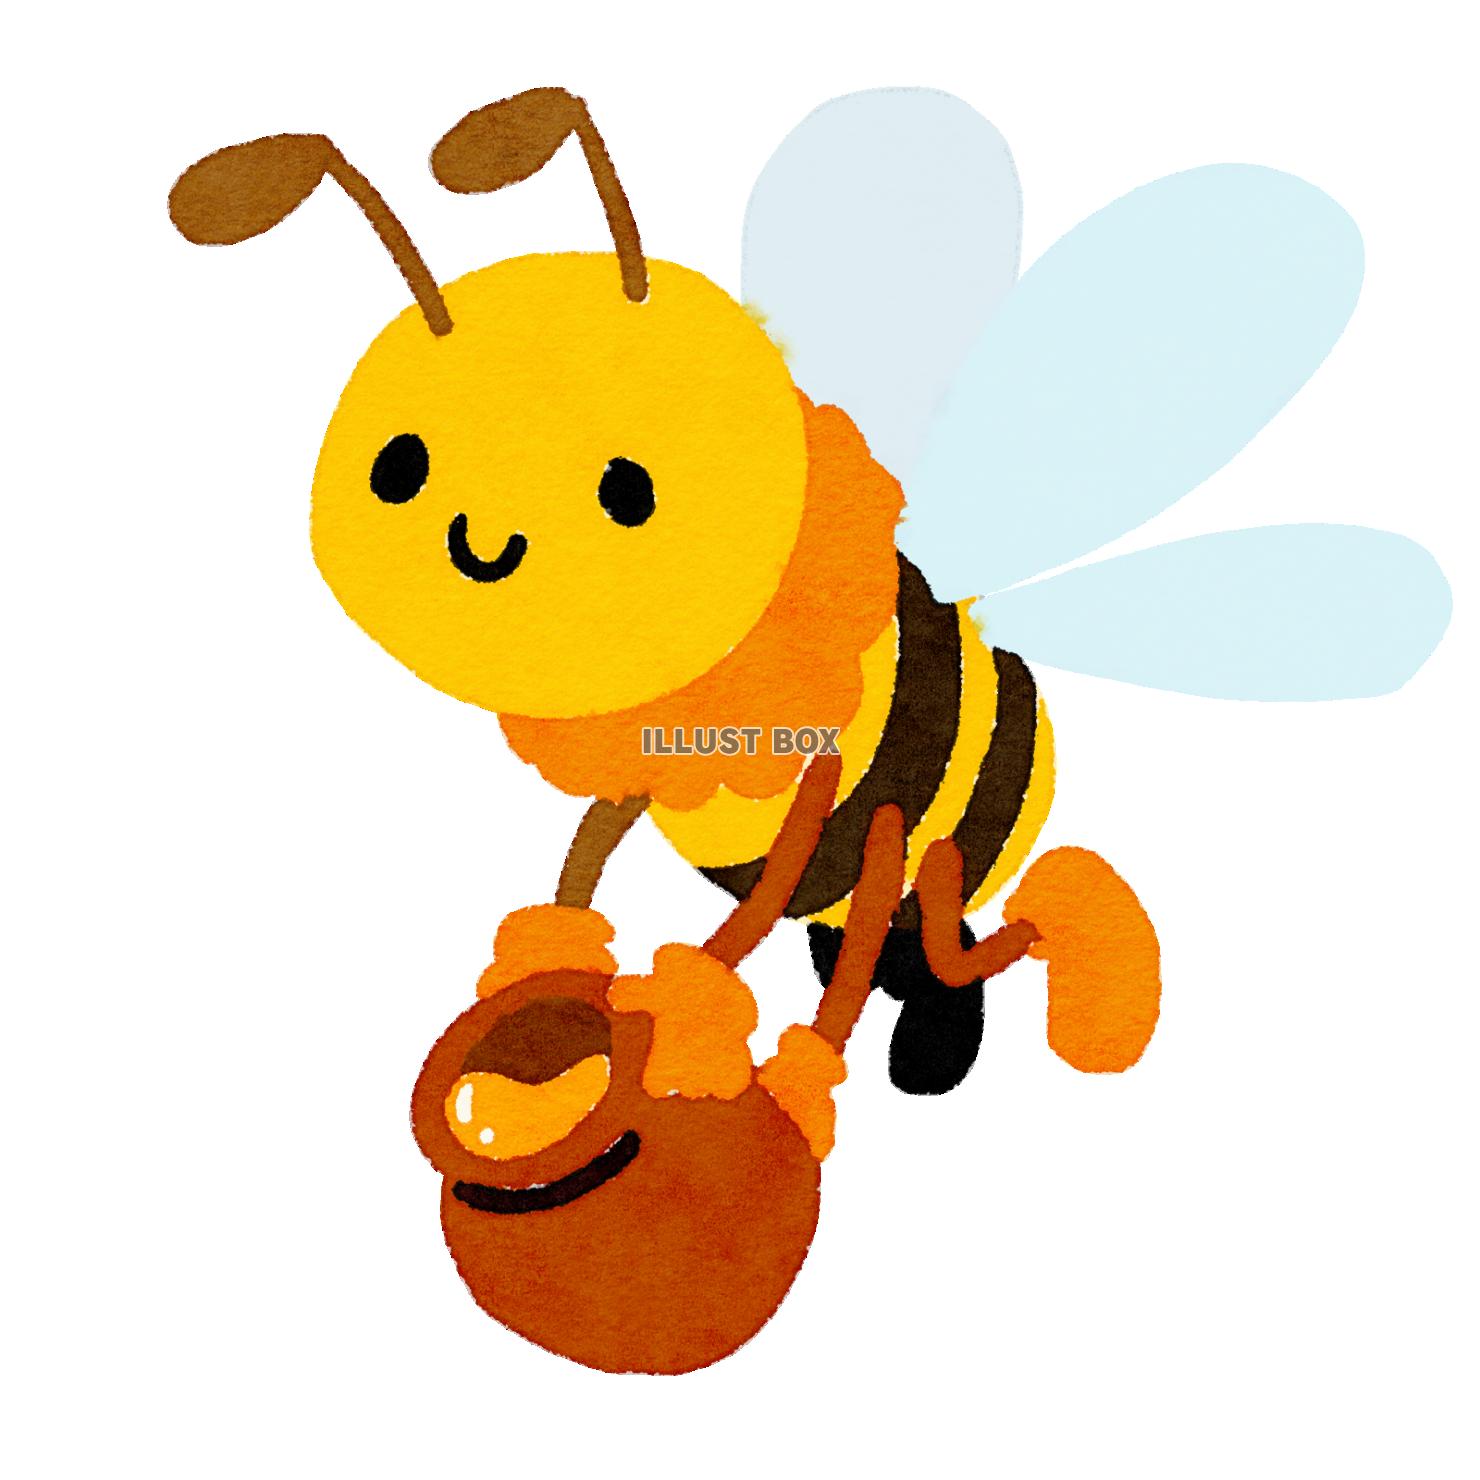 ハチミツを運ぶミツバチ